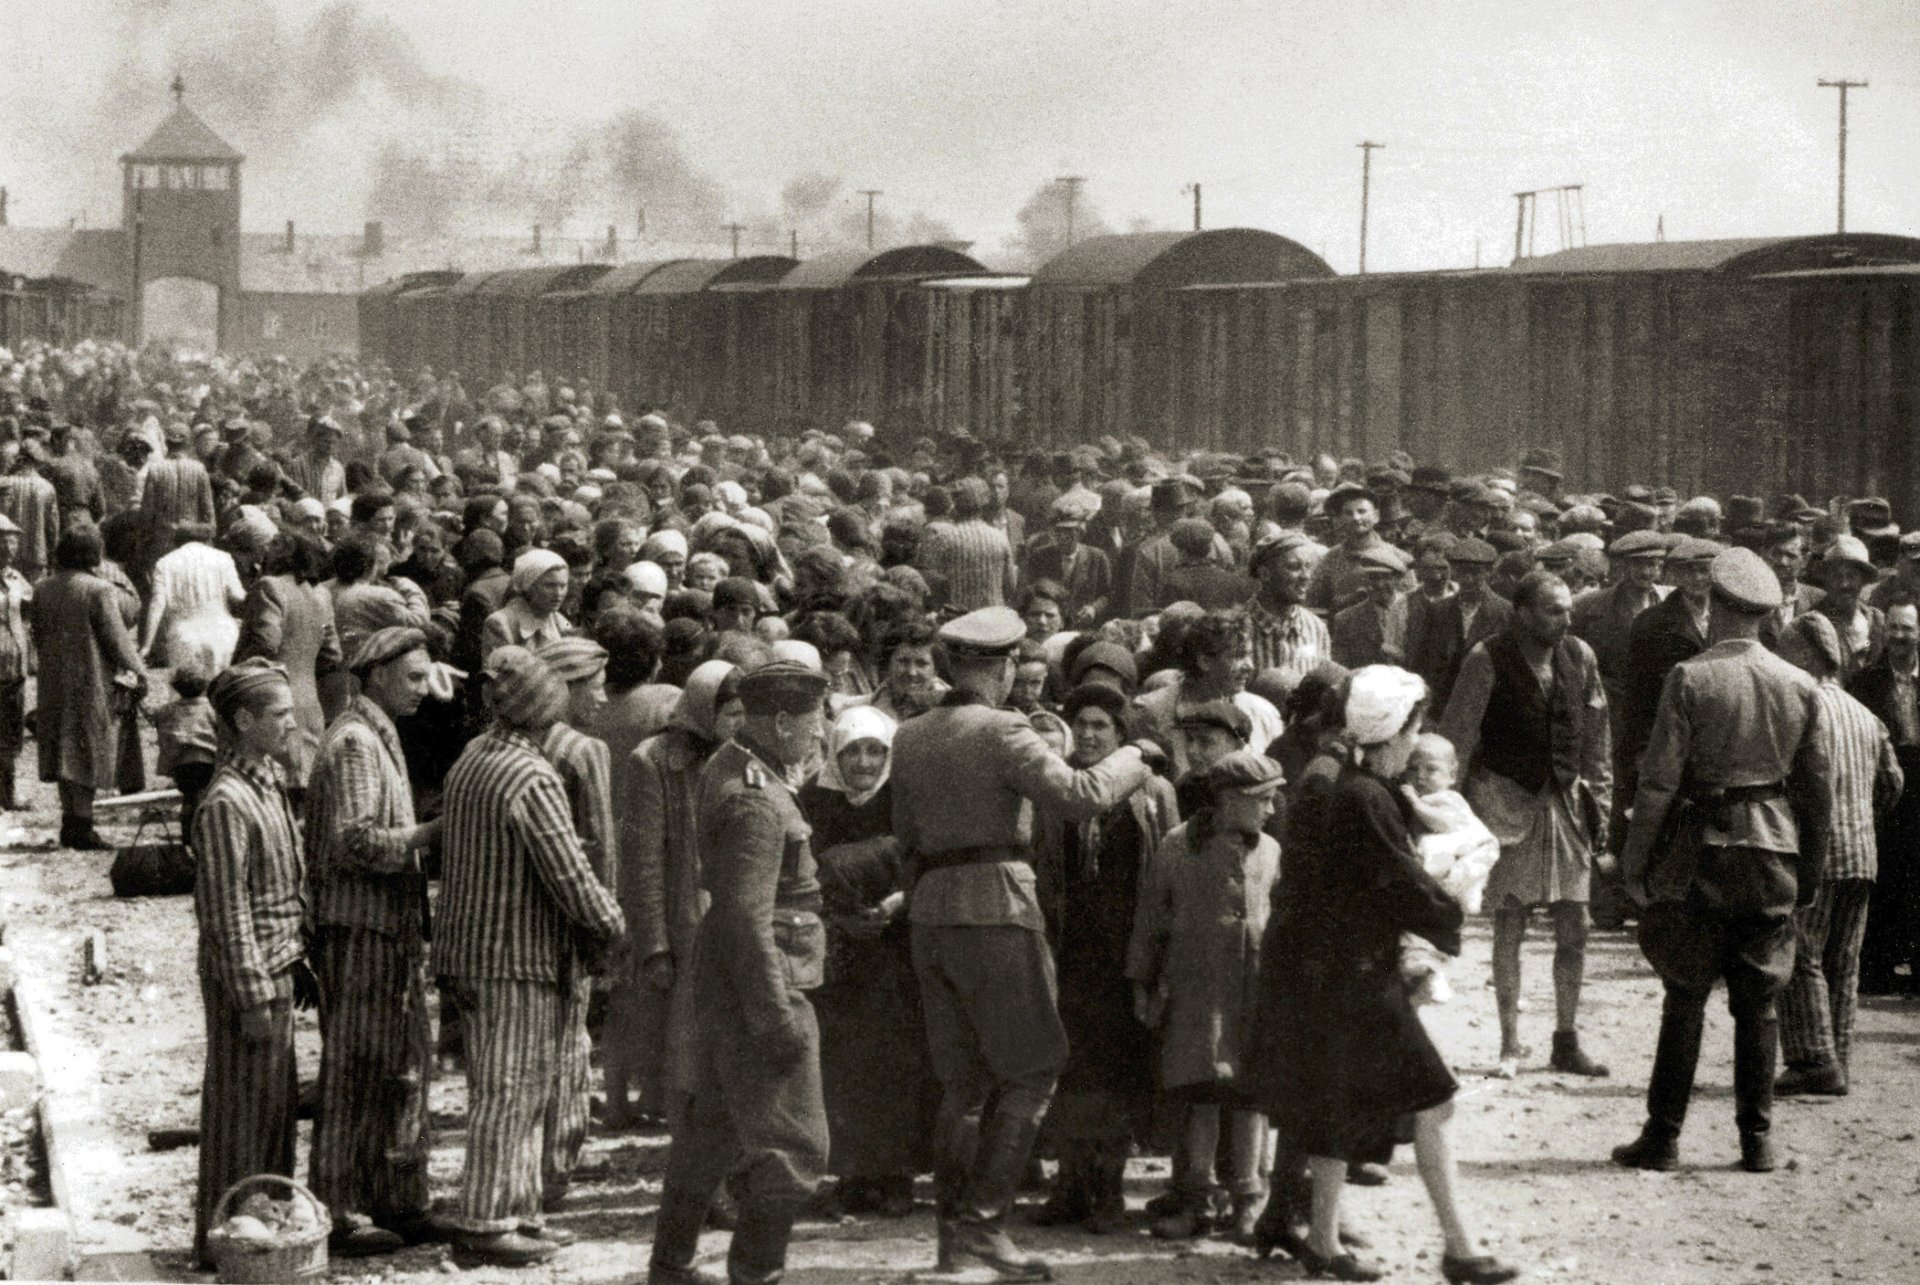 Selection_on_the_ramp_at_Auschwitz-Birkenau_1944_Auschwitz_Album_1a-1.jpg